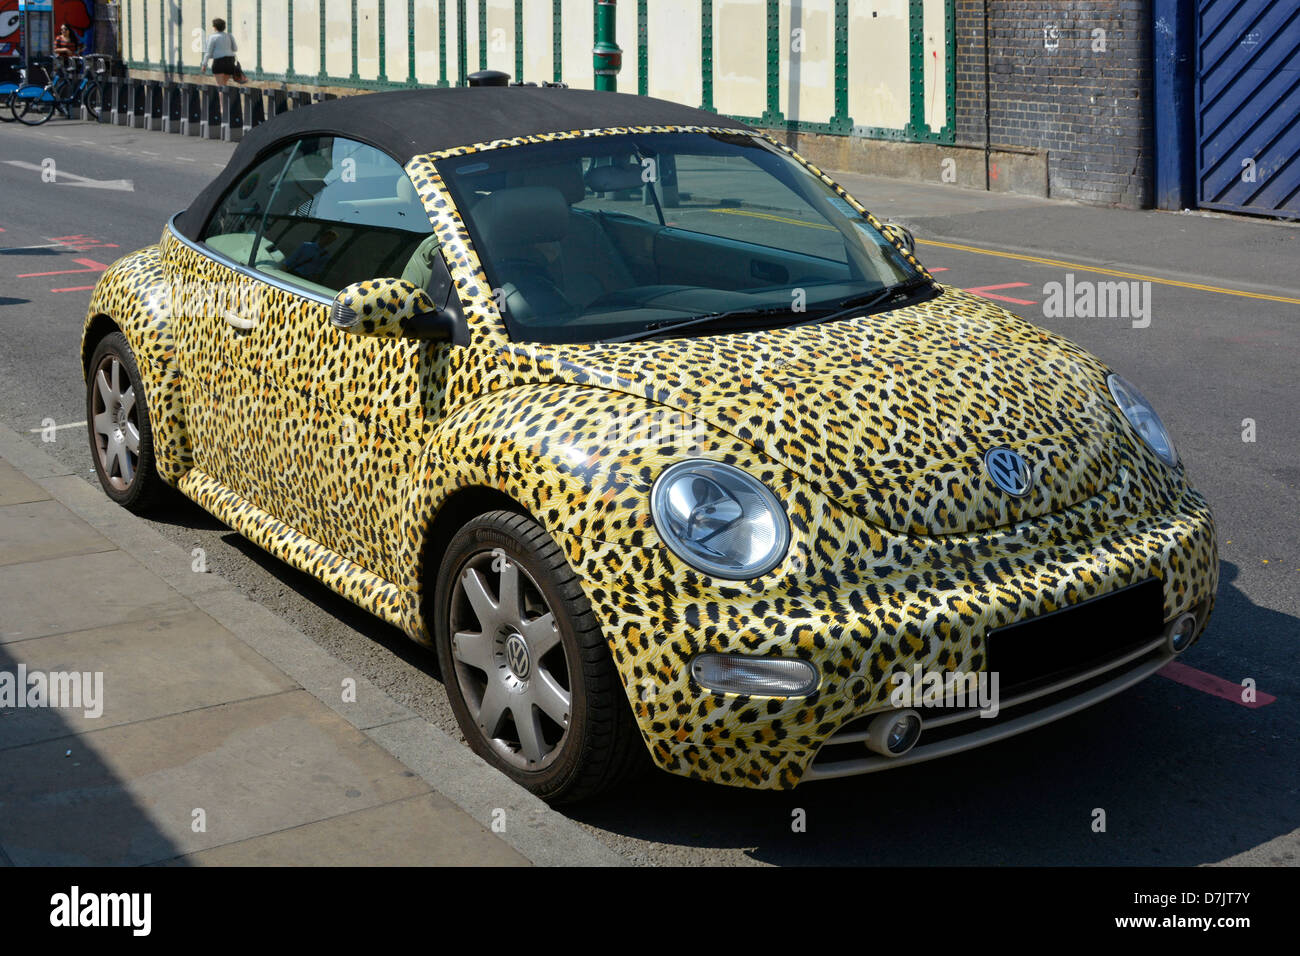 Volkswagen Beetle coche con piel de leopardo inusual que cubren Impresión completa con techo de vinilo (oculto) placa de matrícula Foto de stock